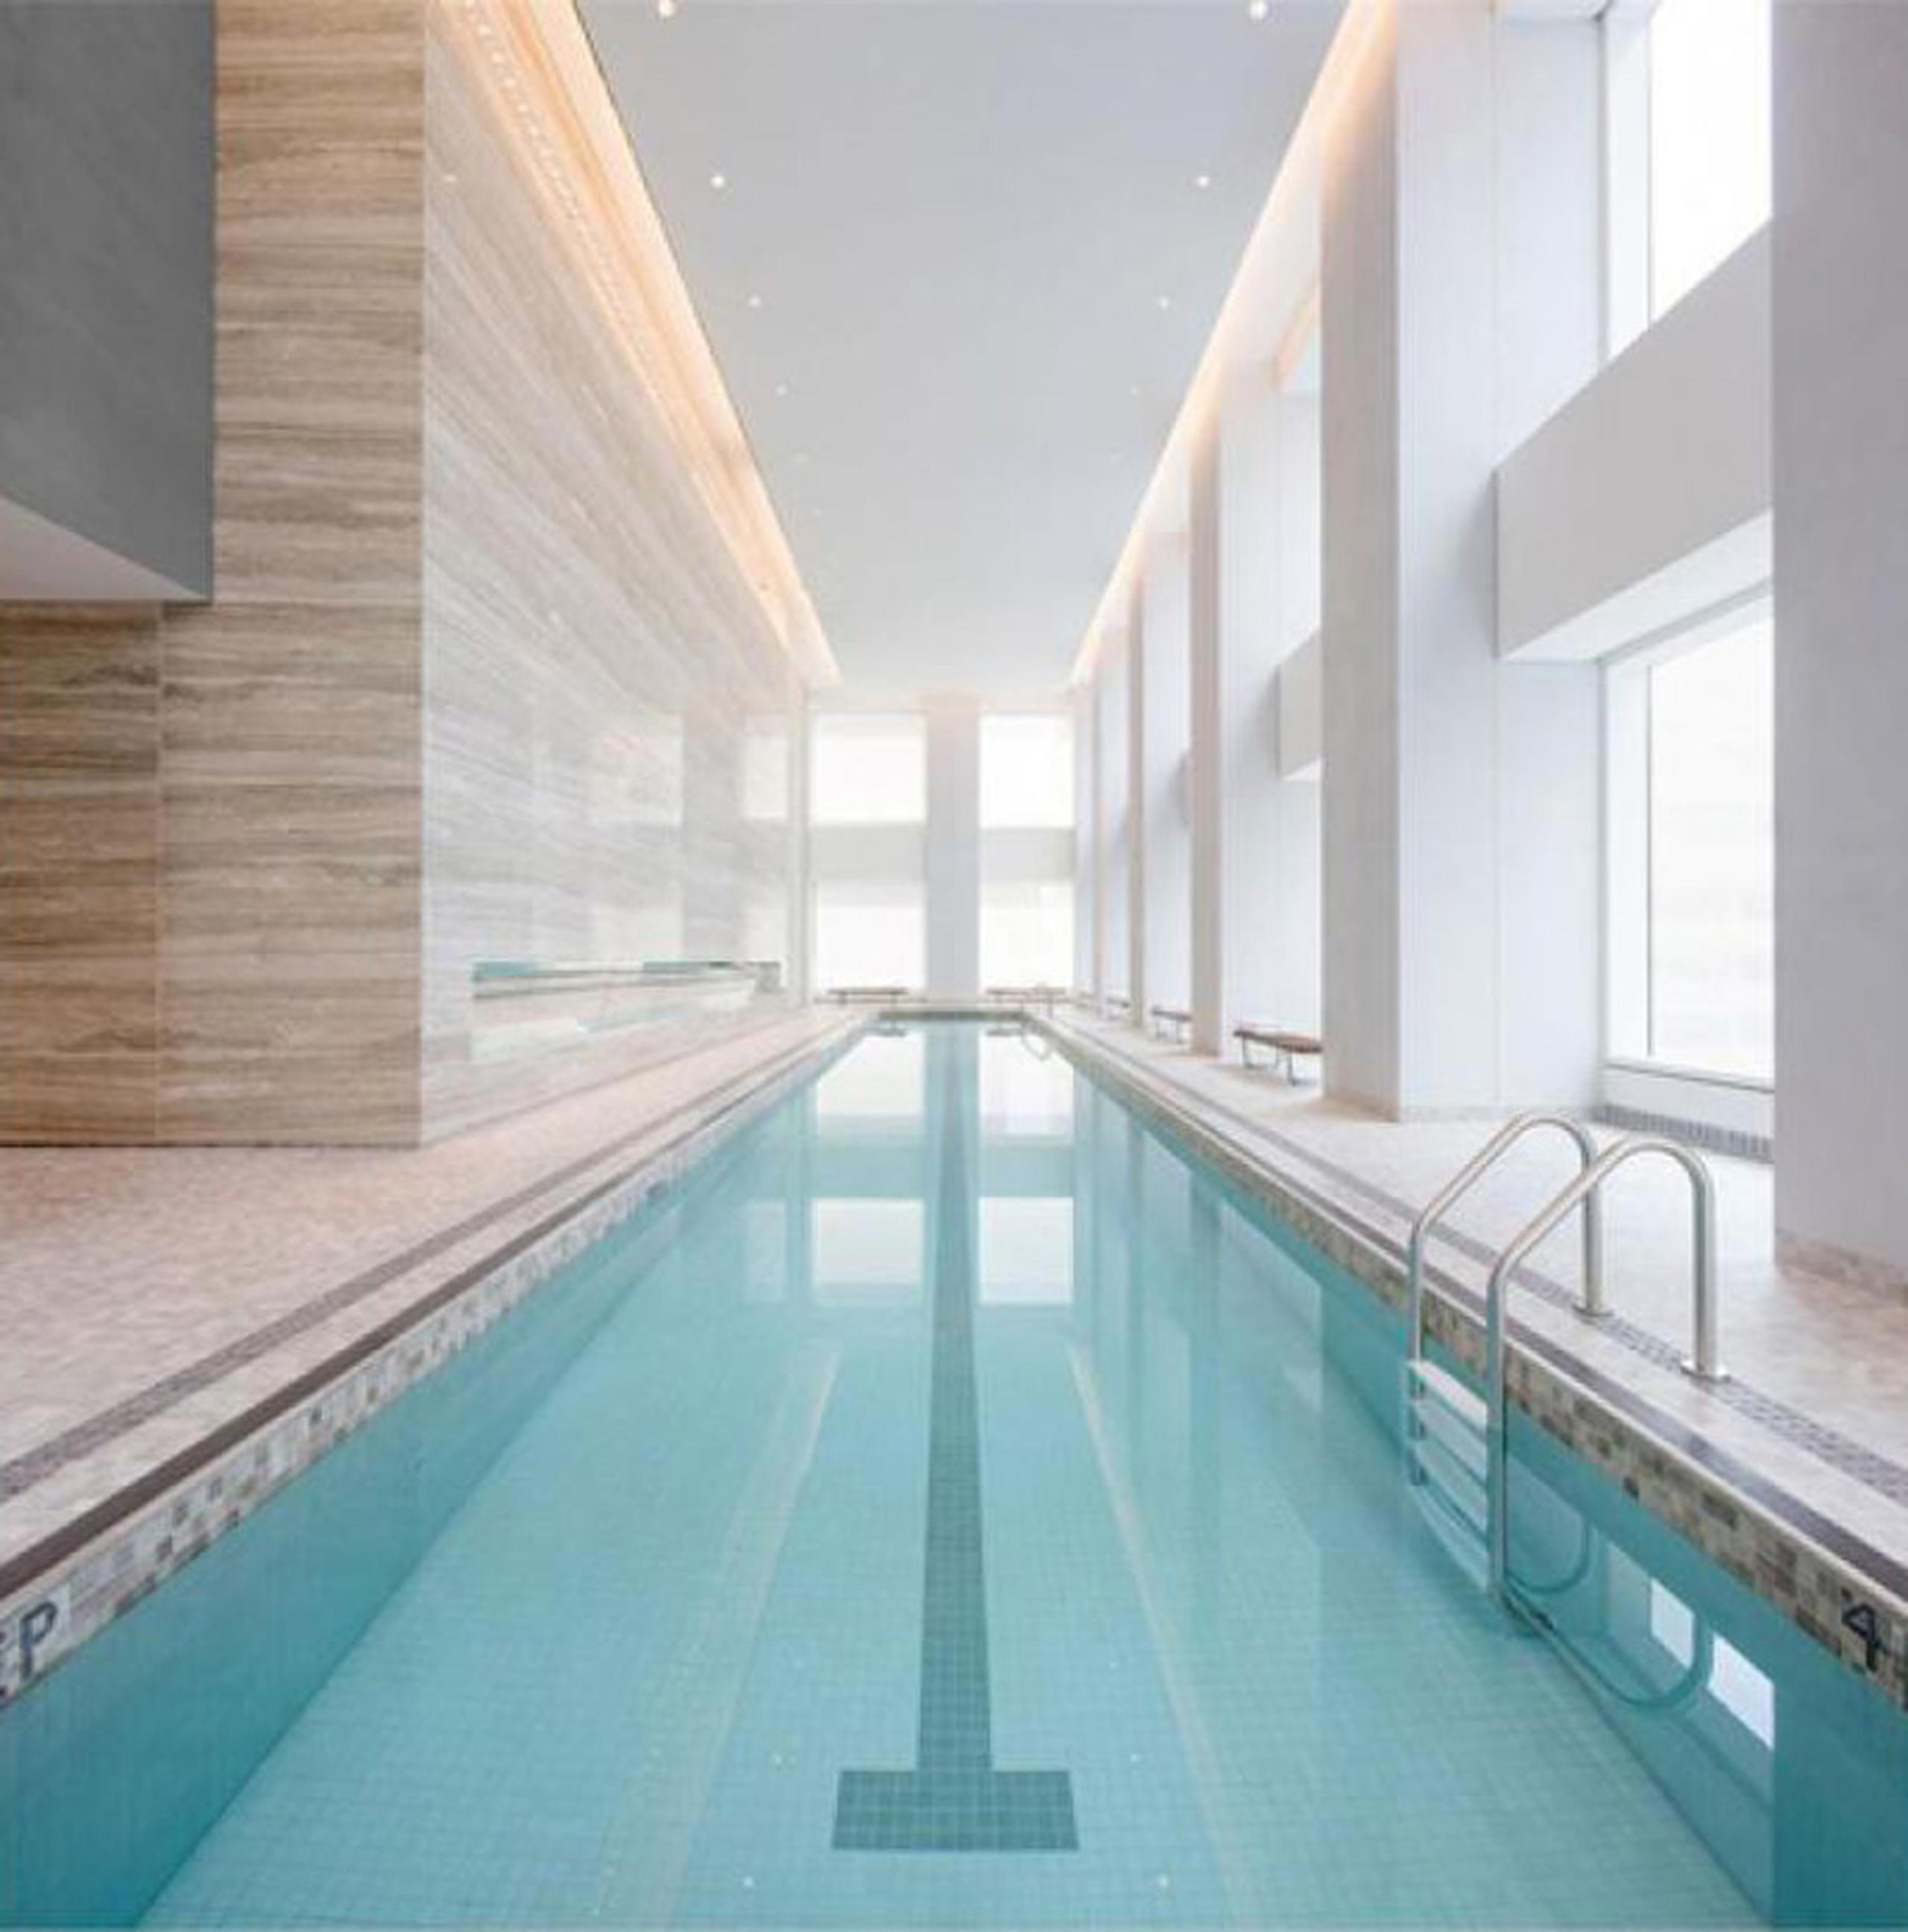 Por si fuera poco, al interior del apartamento, se ubicó una piscina con revestimientos de mármol y madera. (Realtor)